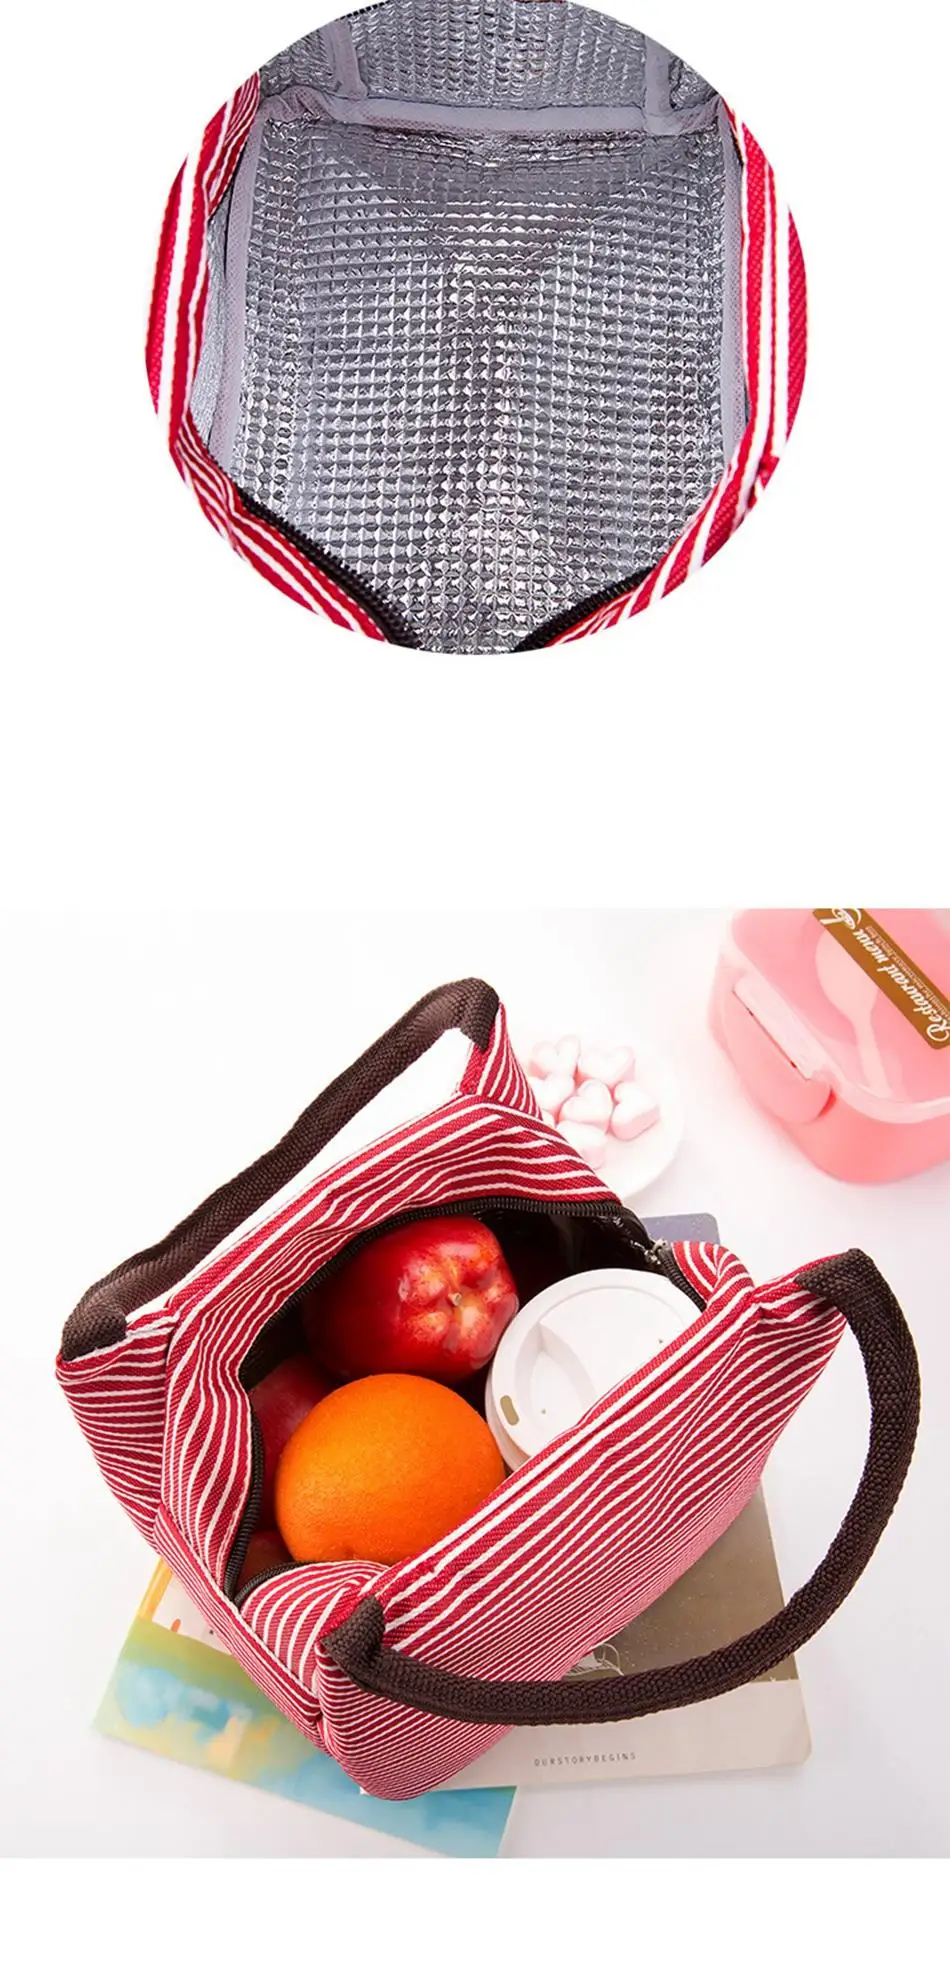 UOSC Для женщин Портативный холст для обеденного мешка полоса теплоизолированные сумки-холодильники сохраняющая тепло для еды на пикник сумки для обедов детская коробка для завтраков, сумка для груза